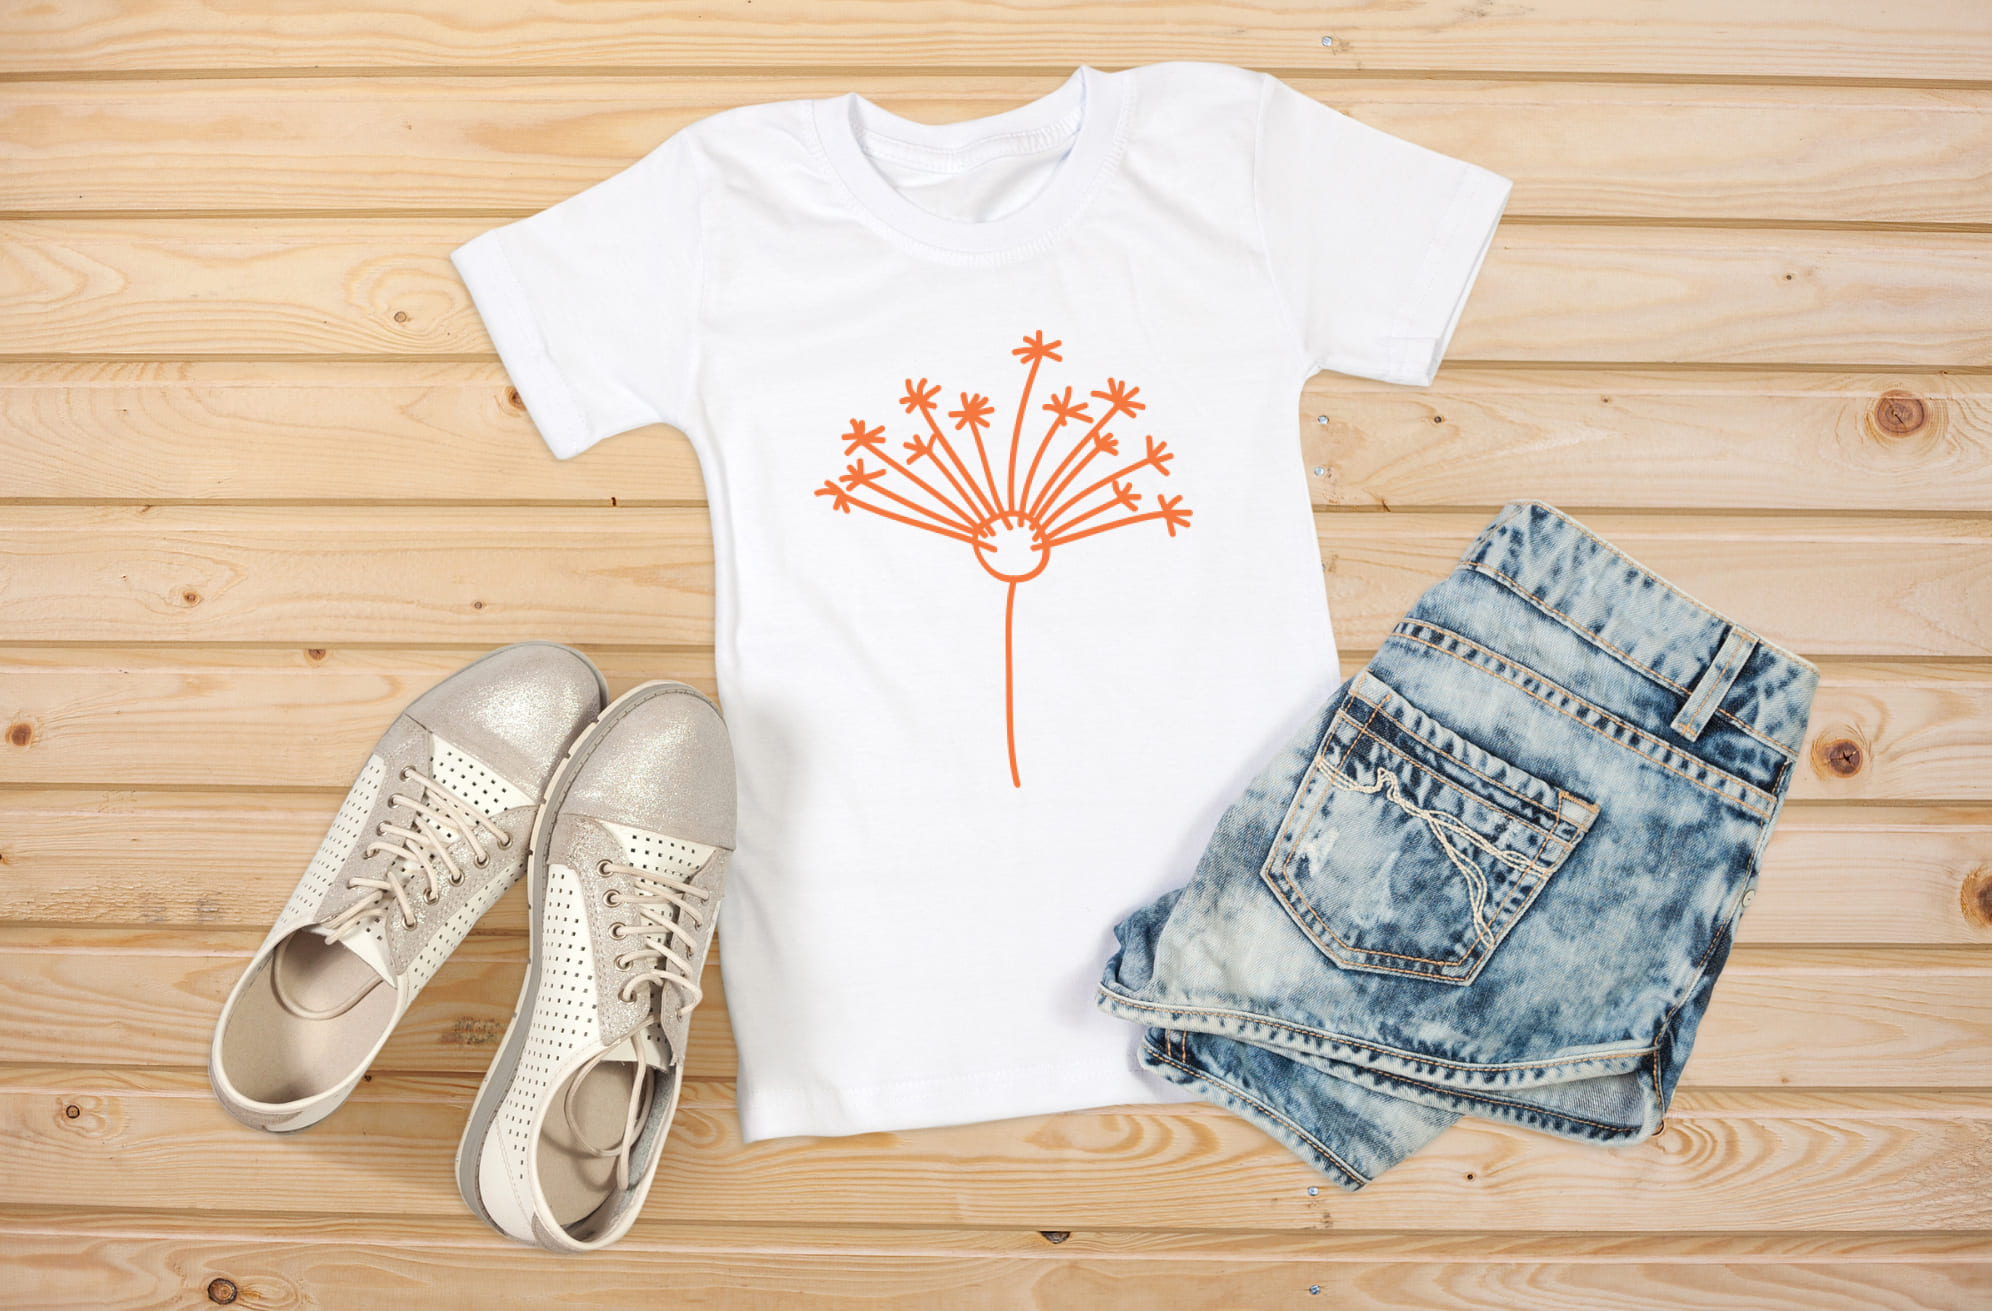 Simple Dandelion T-shirt Designs Bundle – MasterBundles